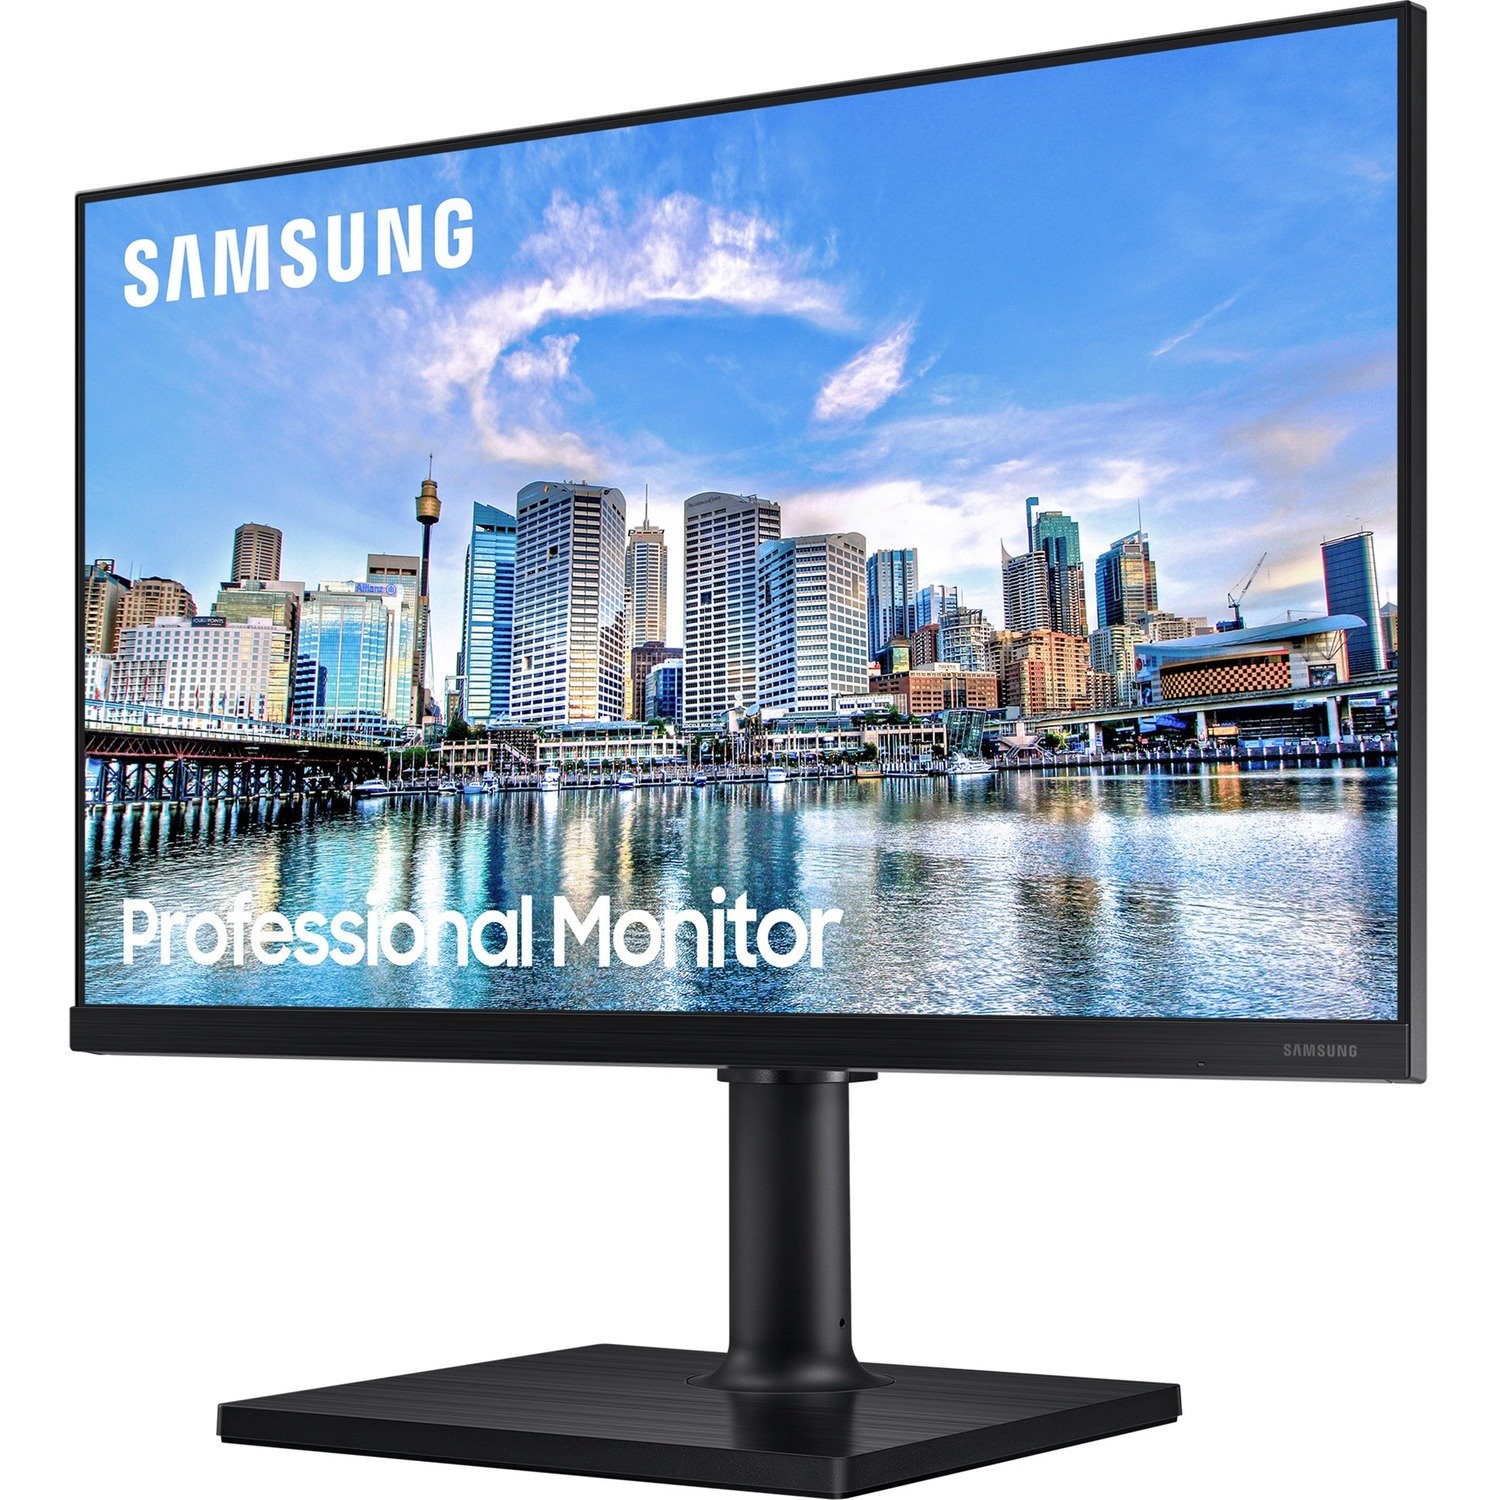 Samsung F22T454FQN 22" Full HD LCD Monitor - 16:9 - Black